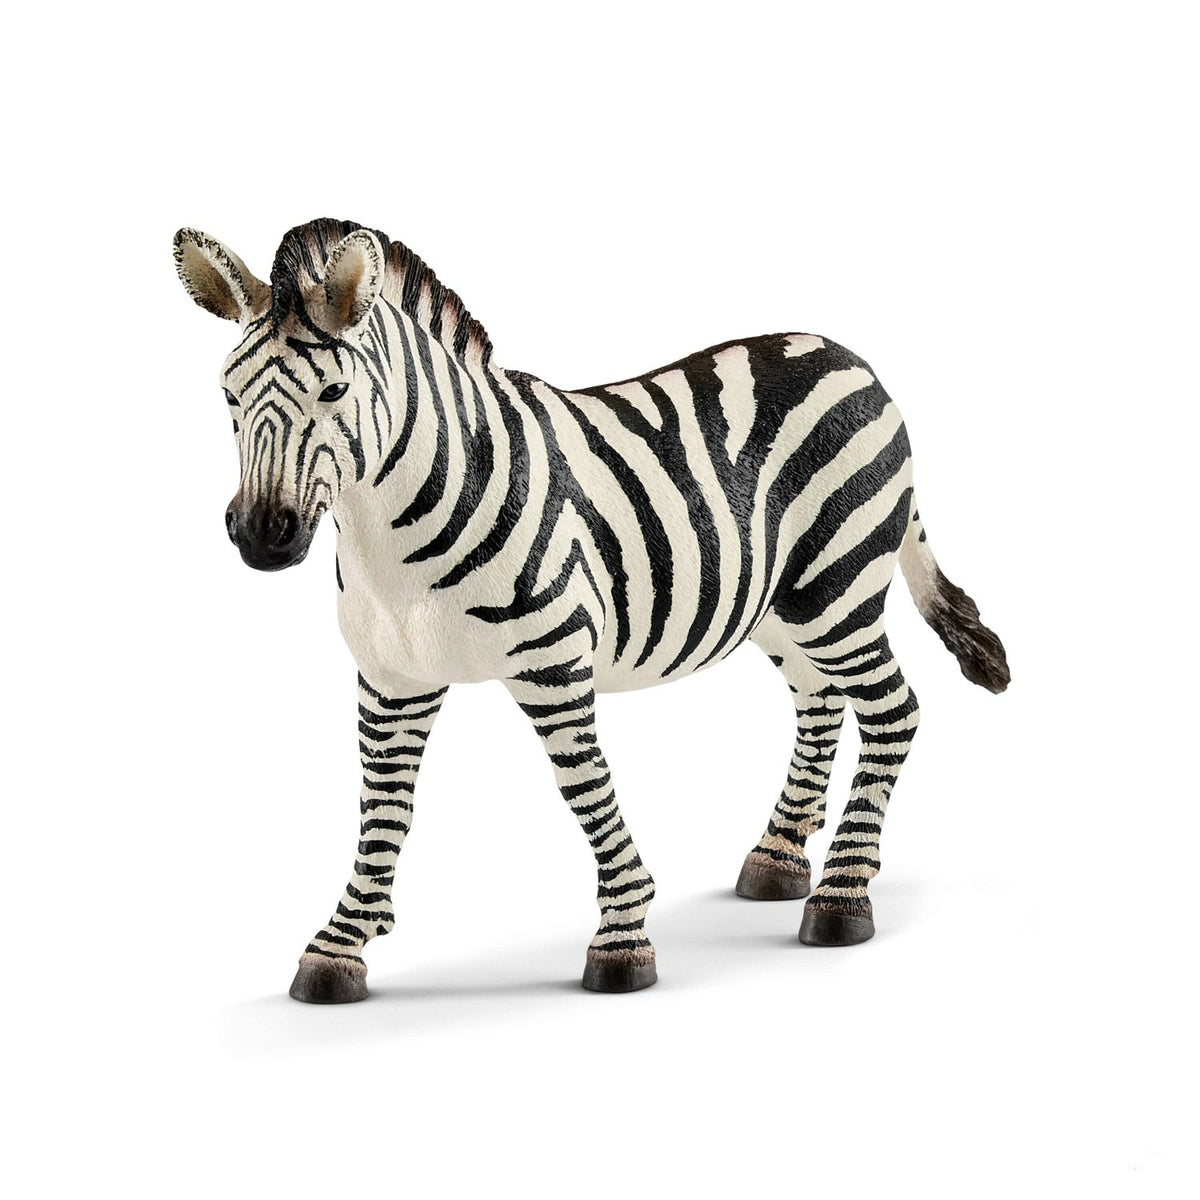 Schleich 14810 Figurine Female Zebra Toy